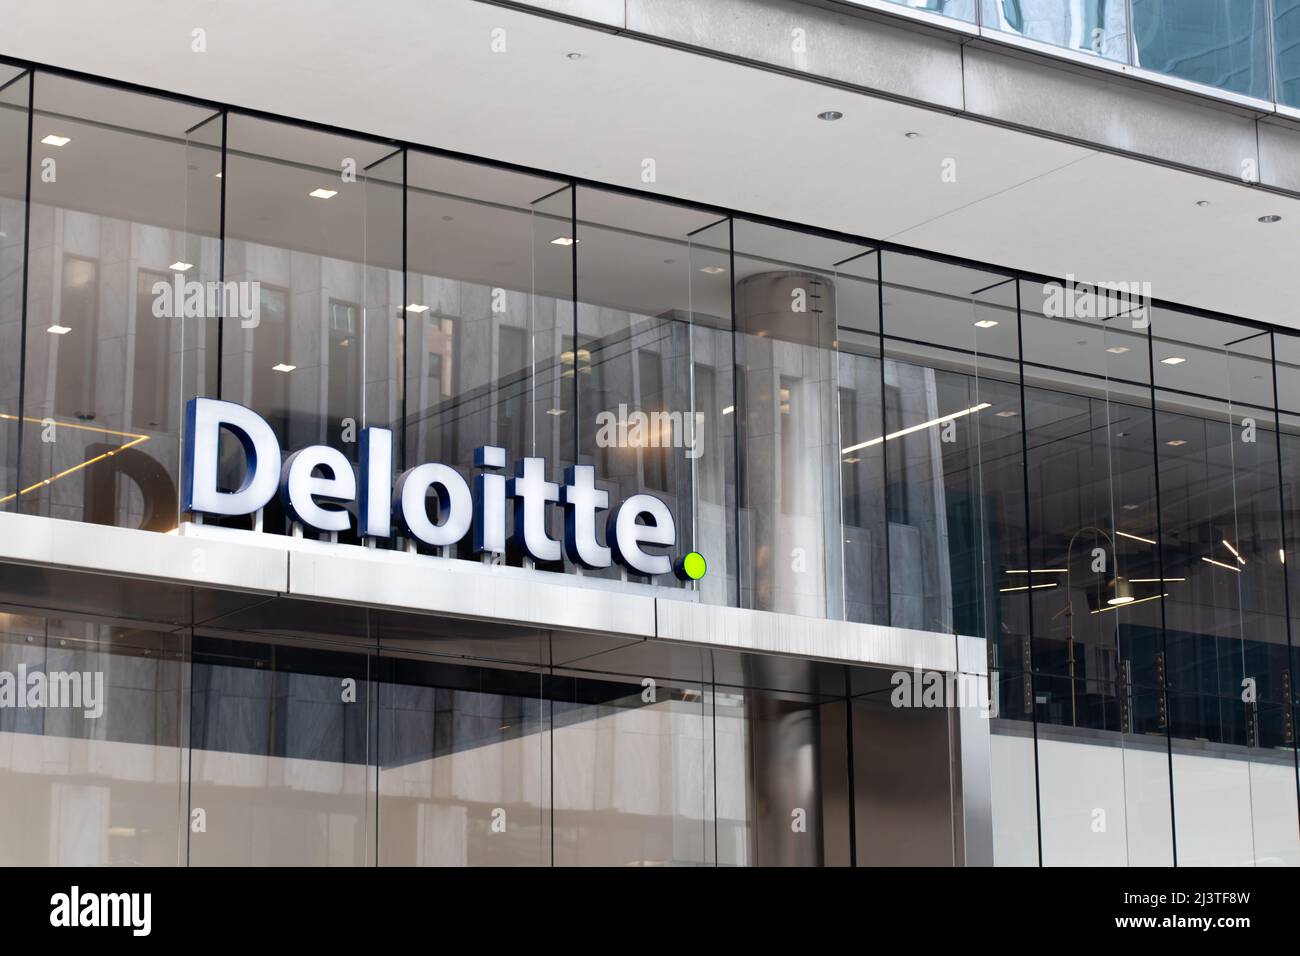 Le logo Deloitte, une firme de services professionnels, est visible à l'avant de leur bureau de Toronto. Banque D'Images